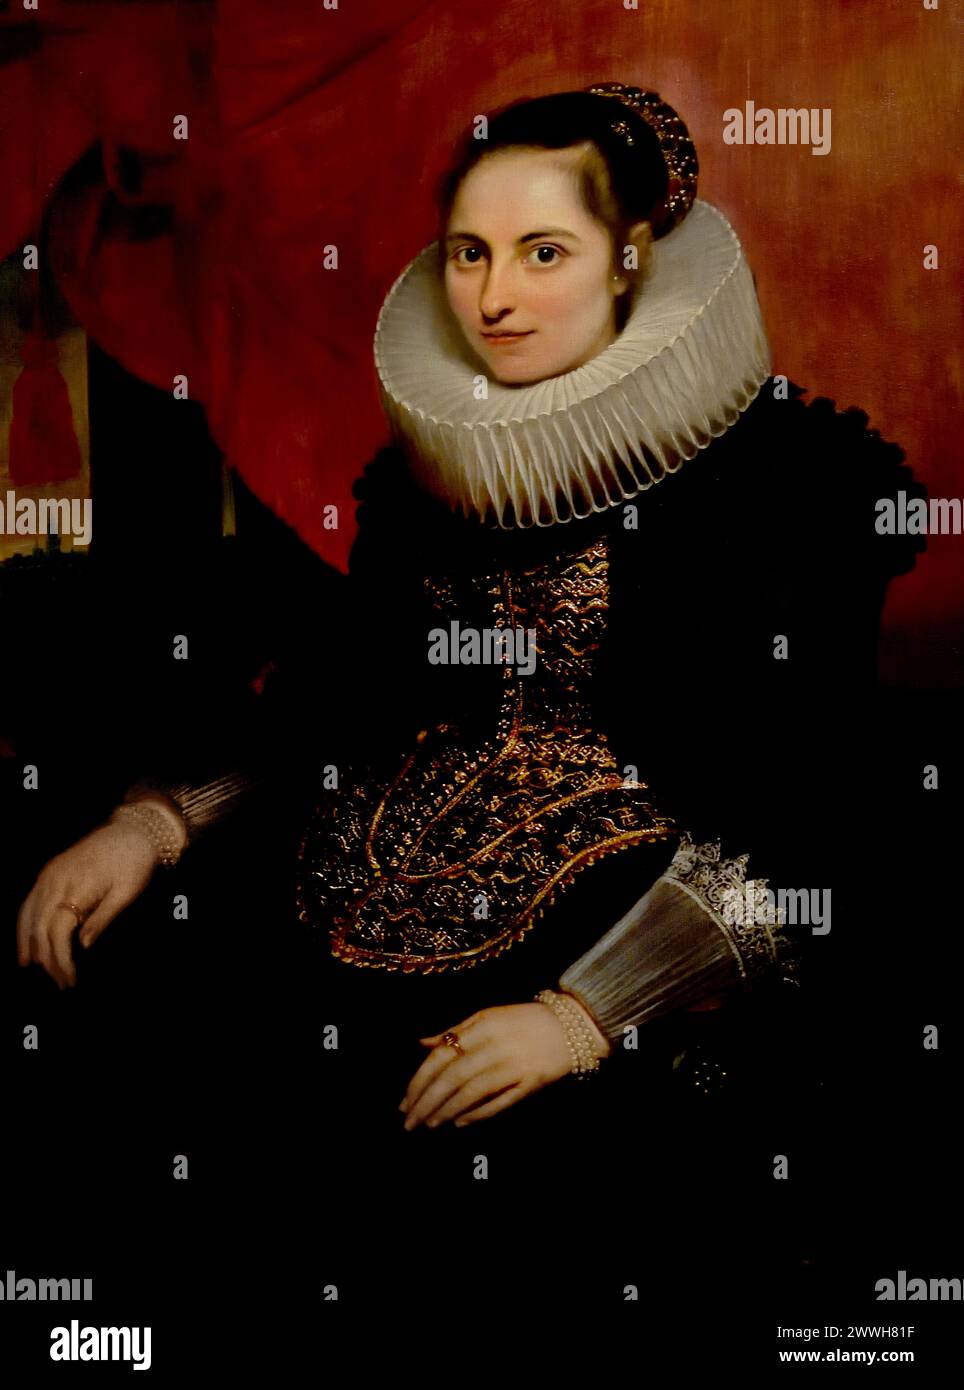 Maria van Ghinderdeuren von Cornelis de Vos 1625 Museum Mayer van den Bergh, Antwerpen, Belgien, Belgien. Stockfoto